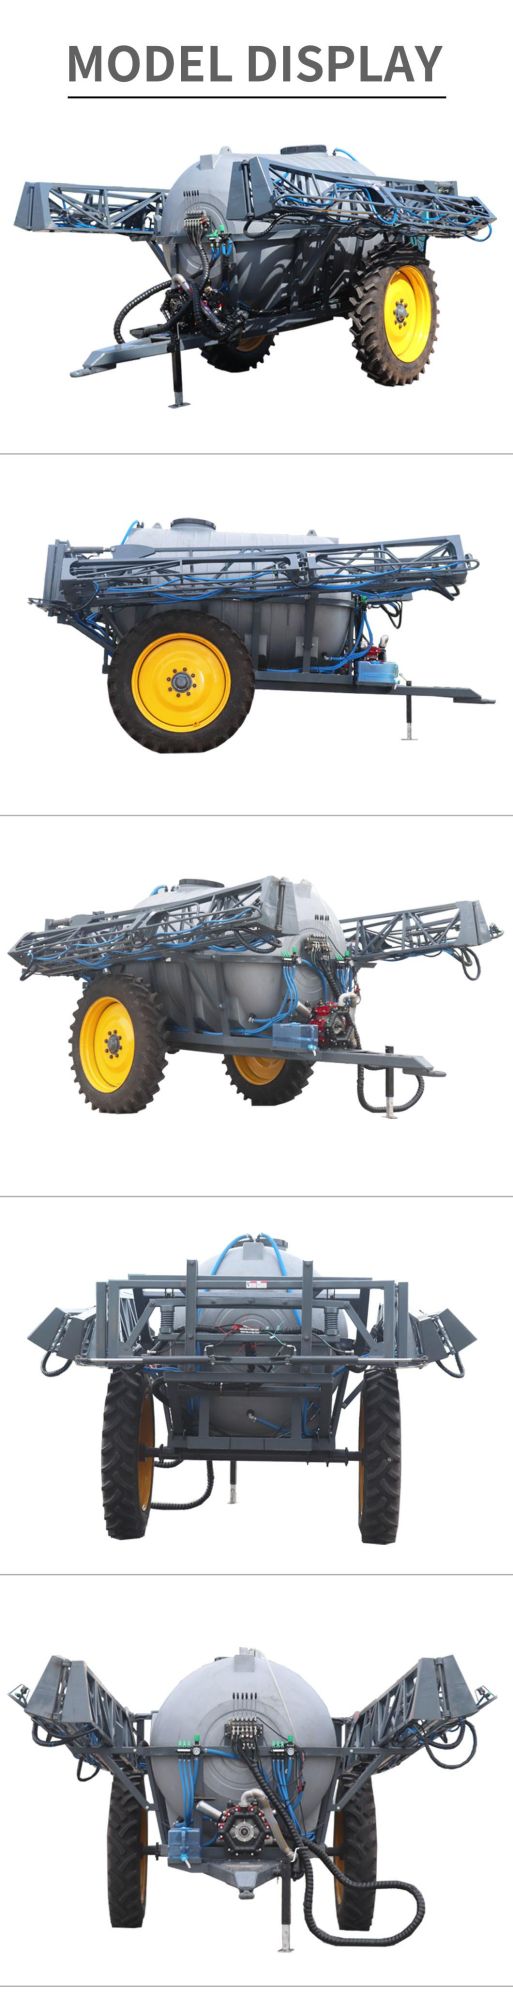 Tractor Drawn Boom Farm Machinery Agricultural Garden Crop Implement Spraying Machine Sprayer